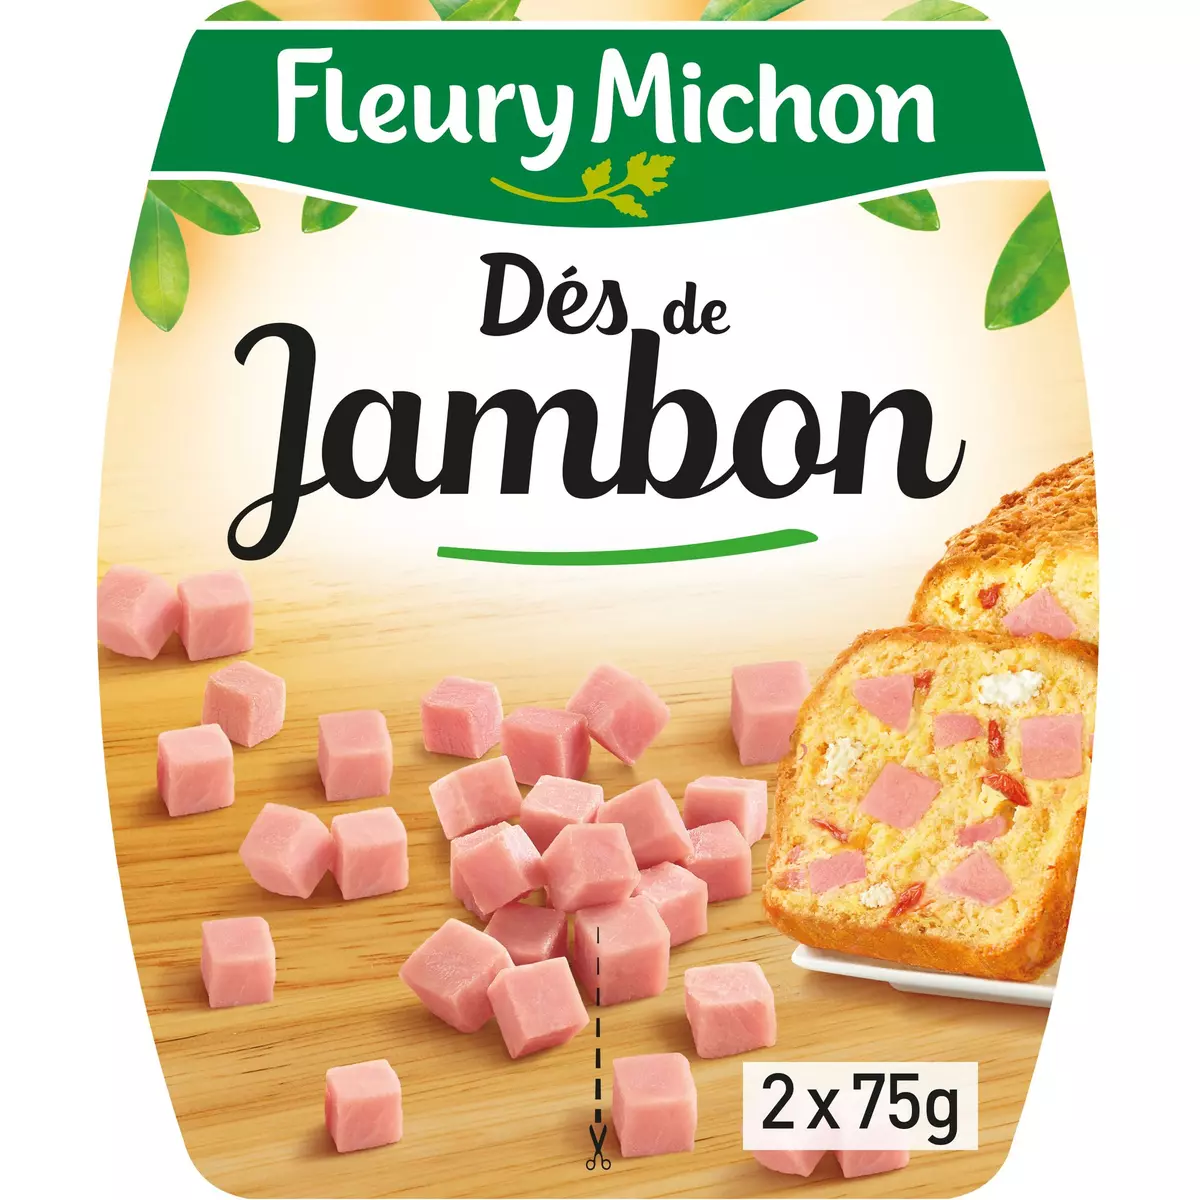 FLEURY MICHON Dés de jambon 2x75g